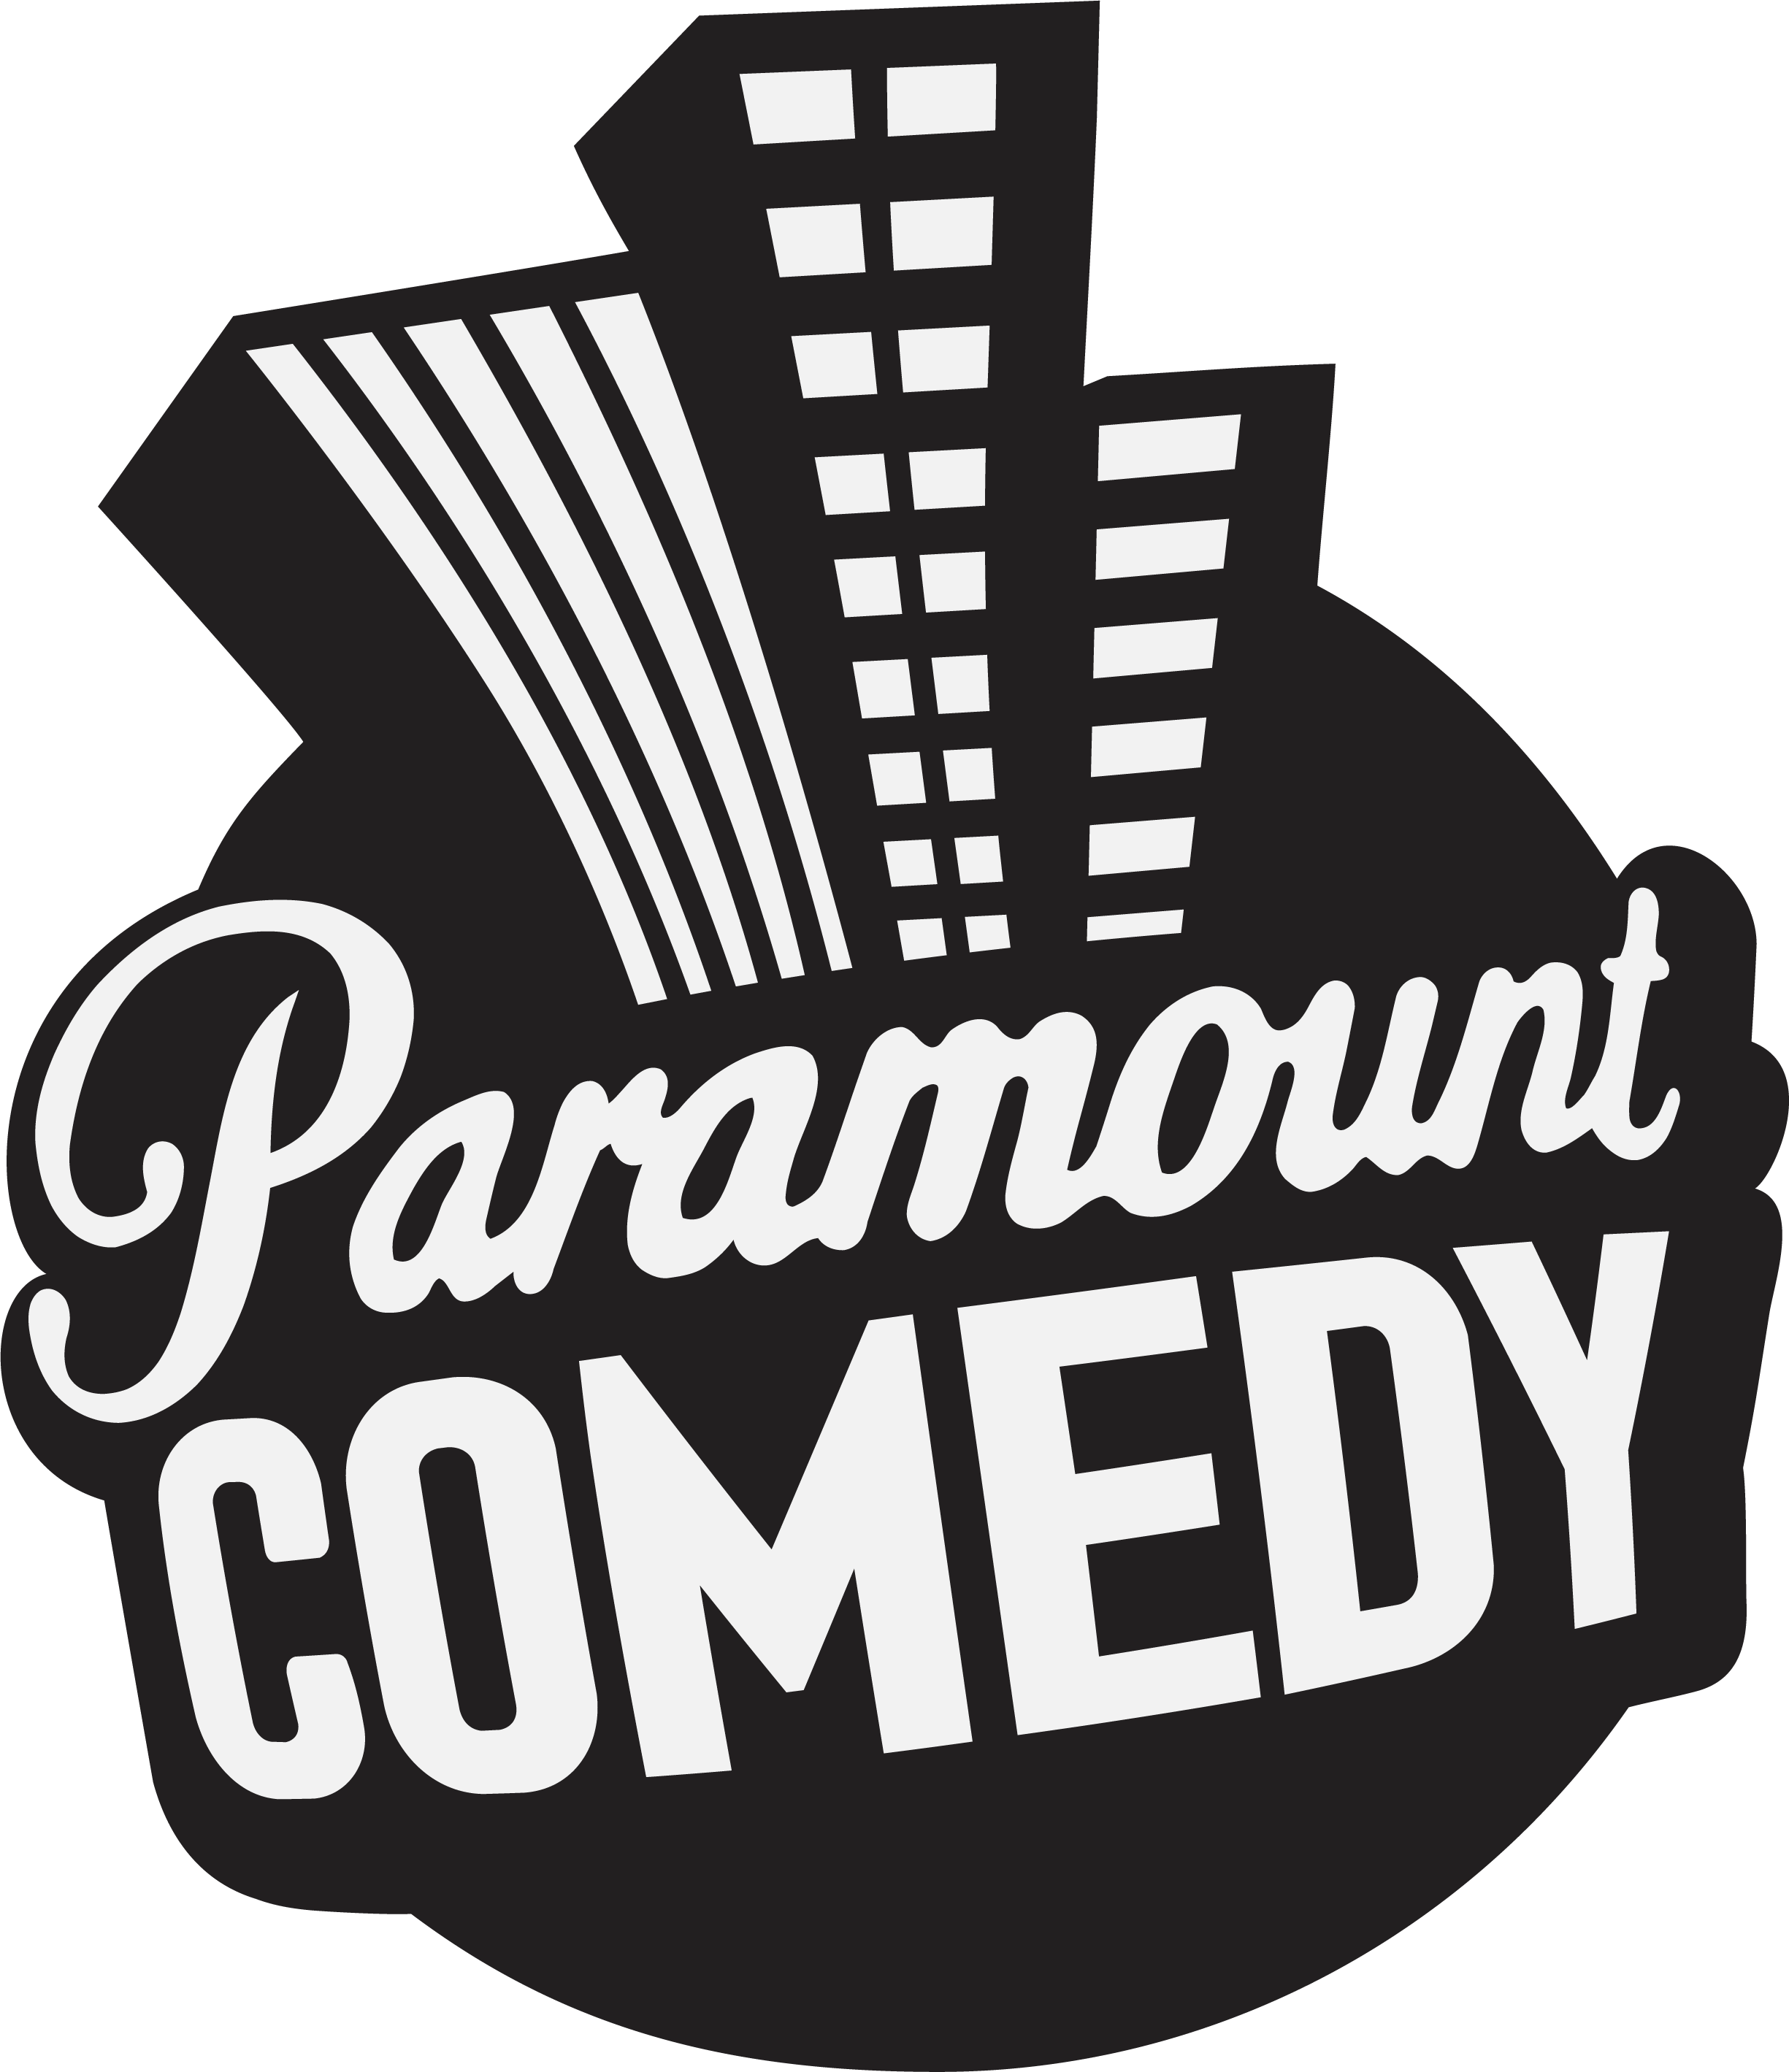 Парамаунт камеди. Логотип телеканала Paramount comedy. Парабау камеди. Заставка Парамаунт камеди. Парамаунт камеди большой